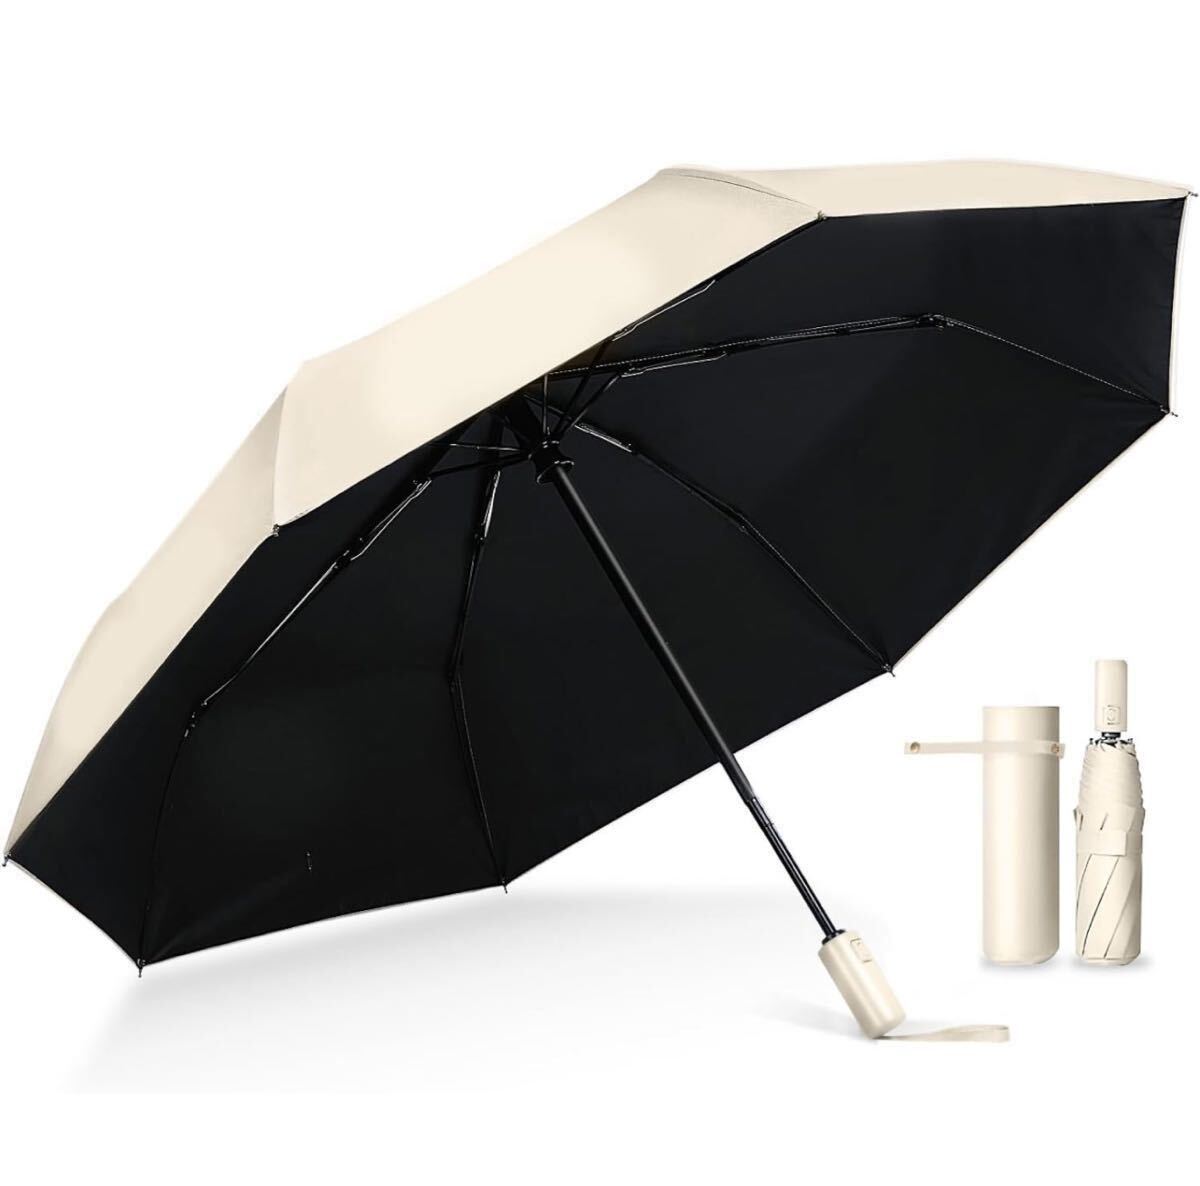 AB-2☆ 国内機関UVカット率100%認証 日傘 折りたたみ傘 完全遮光 晴雨兼用 男女兼用 ワンタッチ自動開閉 ザクラシックトーキョー の画像1